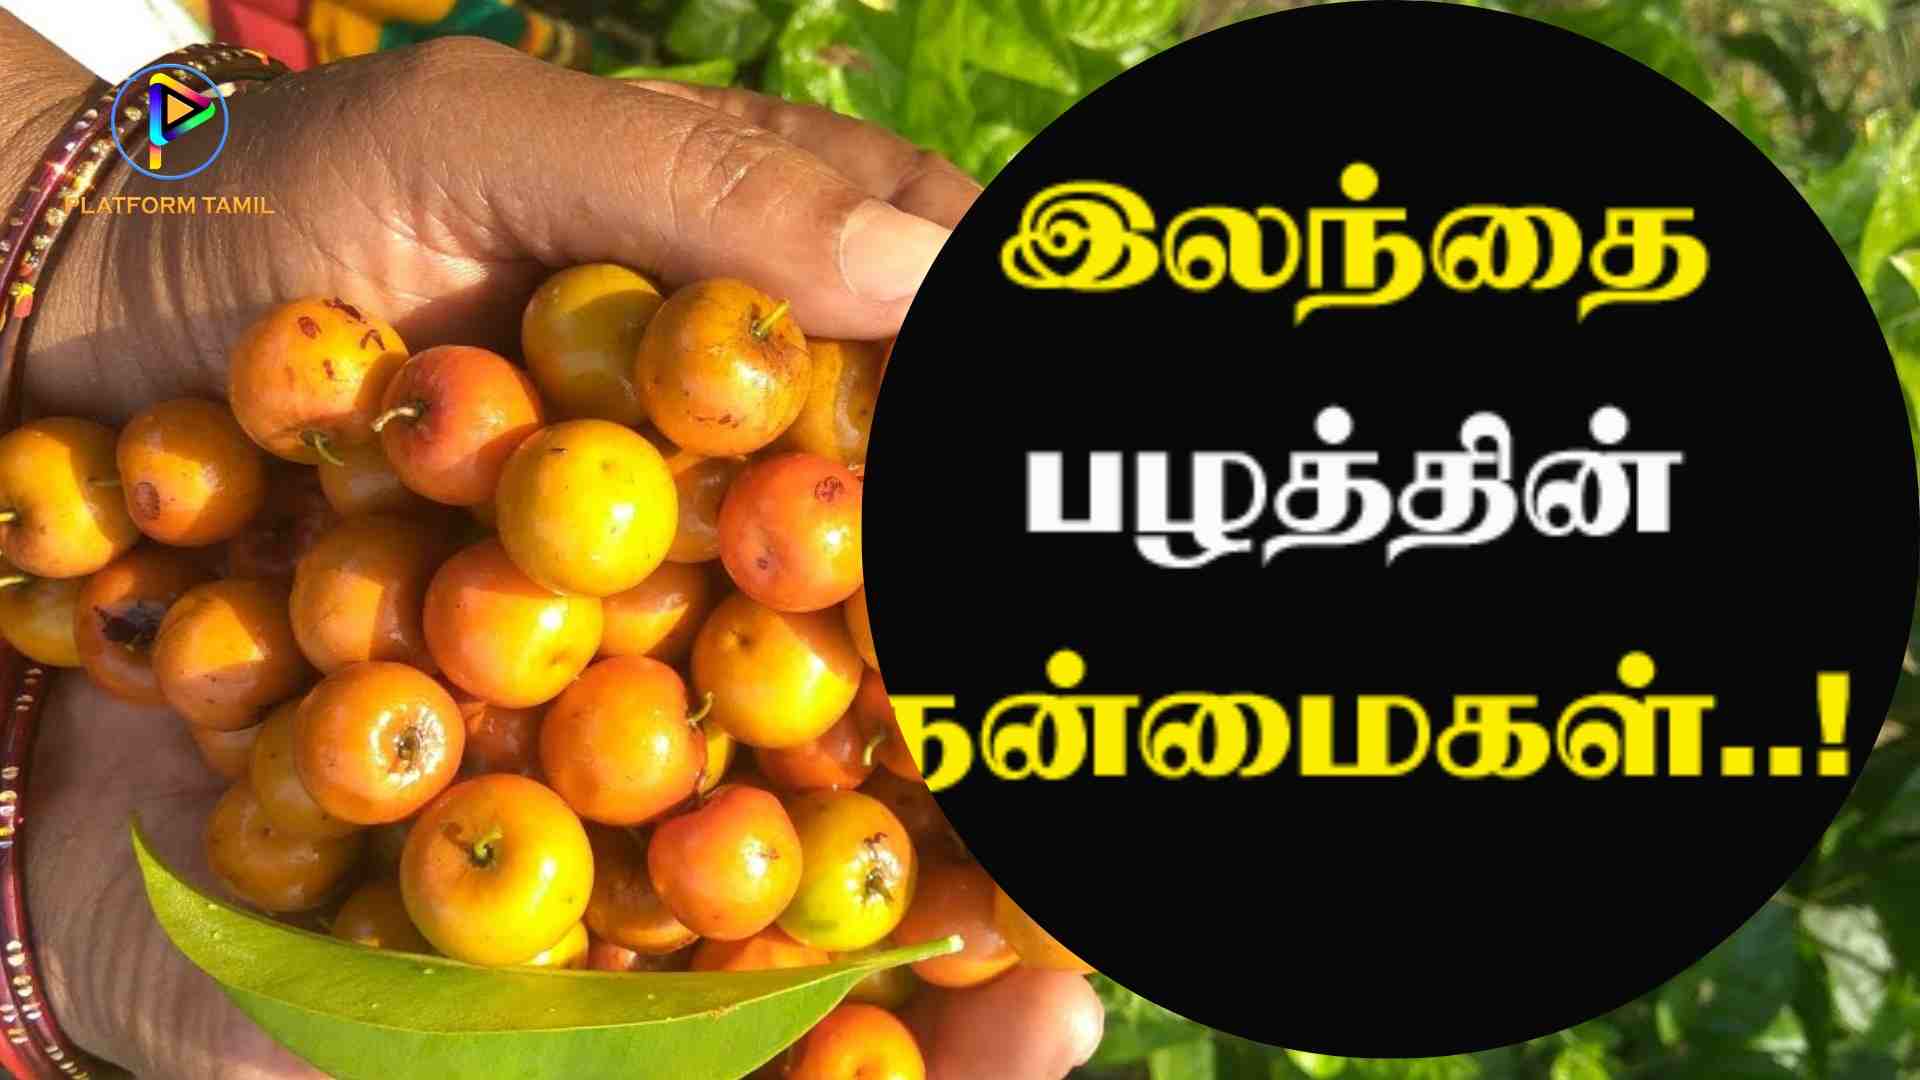 இலந்தைப்பழம்(Jujube Fruits) - Platform Tamil